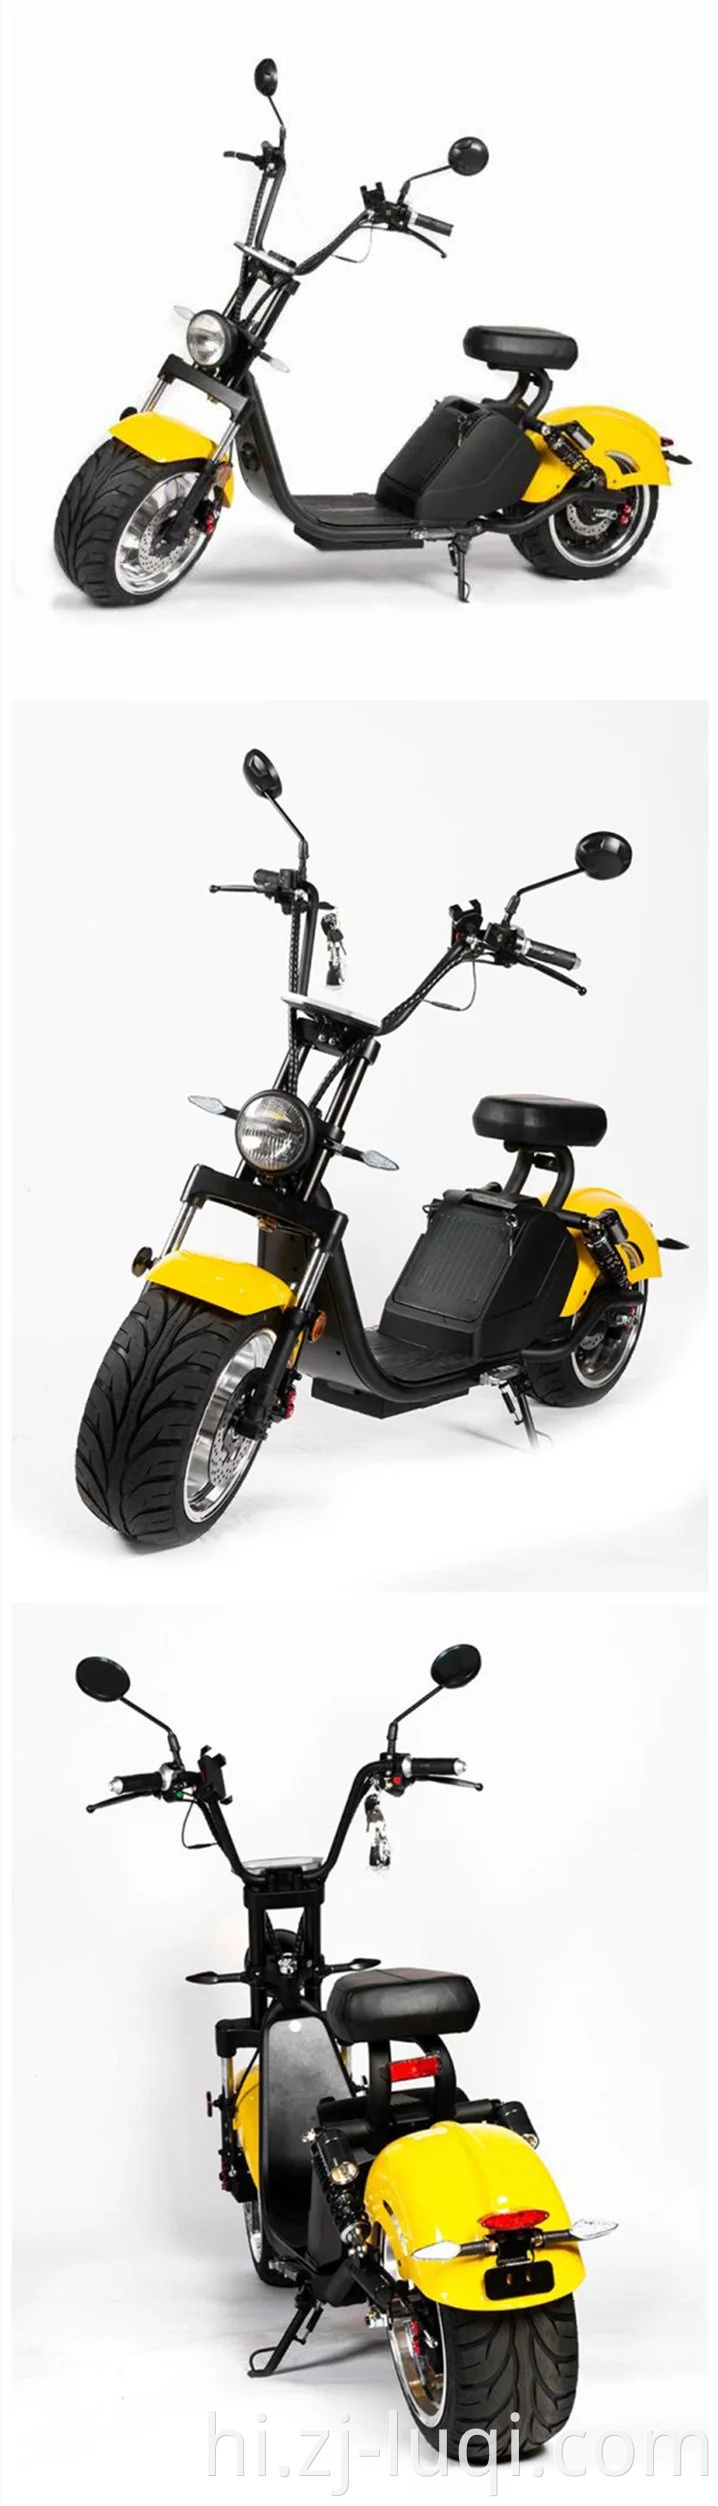 थोक सर्वश्रेष्ठ खरीदें 2020 नई मोटरसाइकिल ईईसी वसा टायर 1500W / 3000W सिटीकोको वयस्क चोपर स्कूटर इलेक्ट्रिक